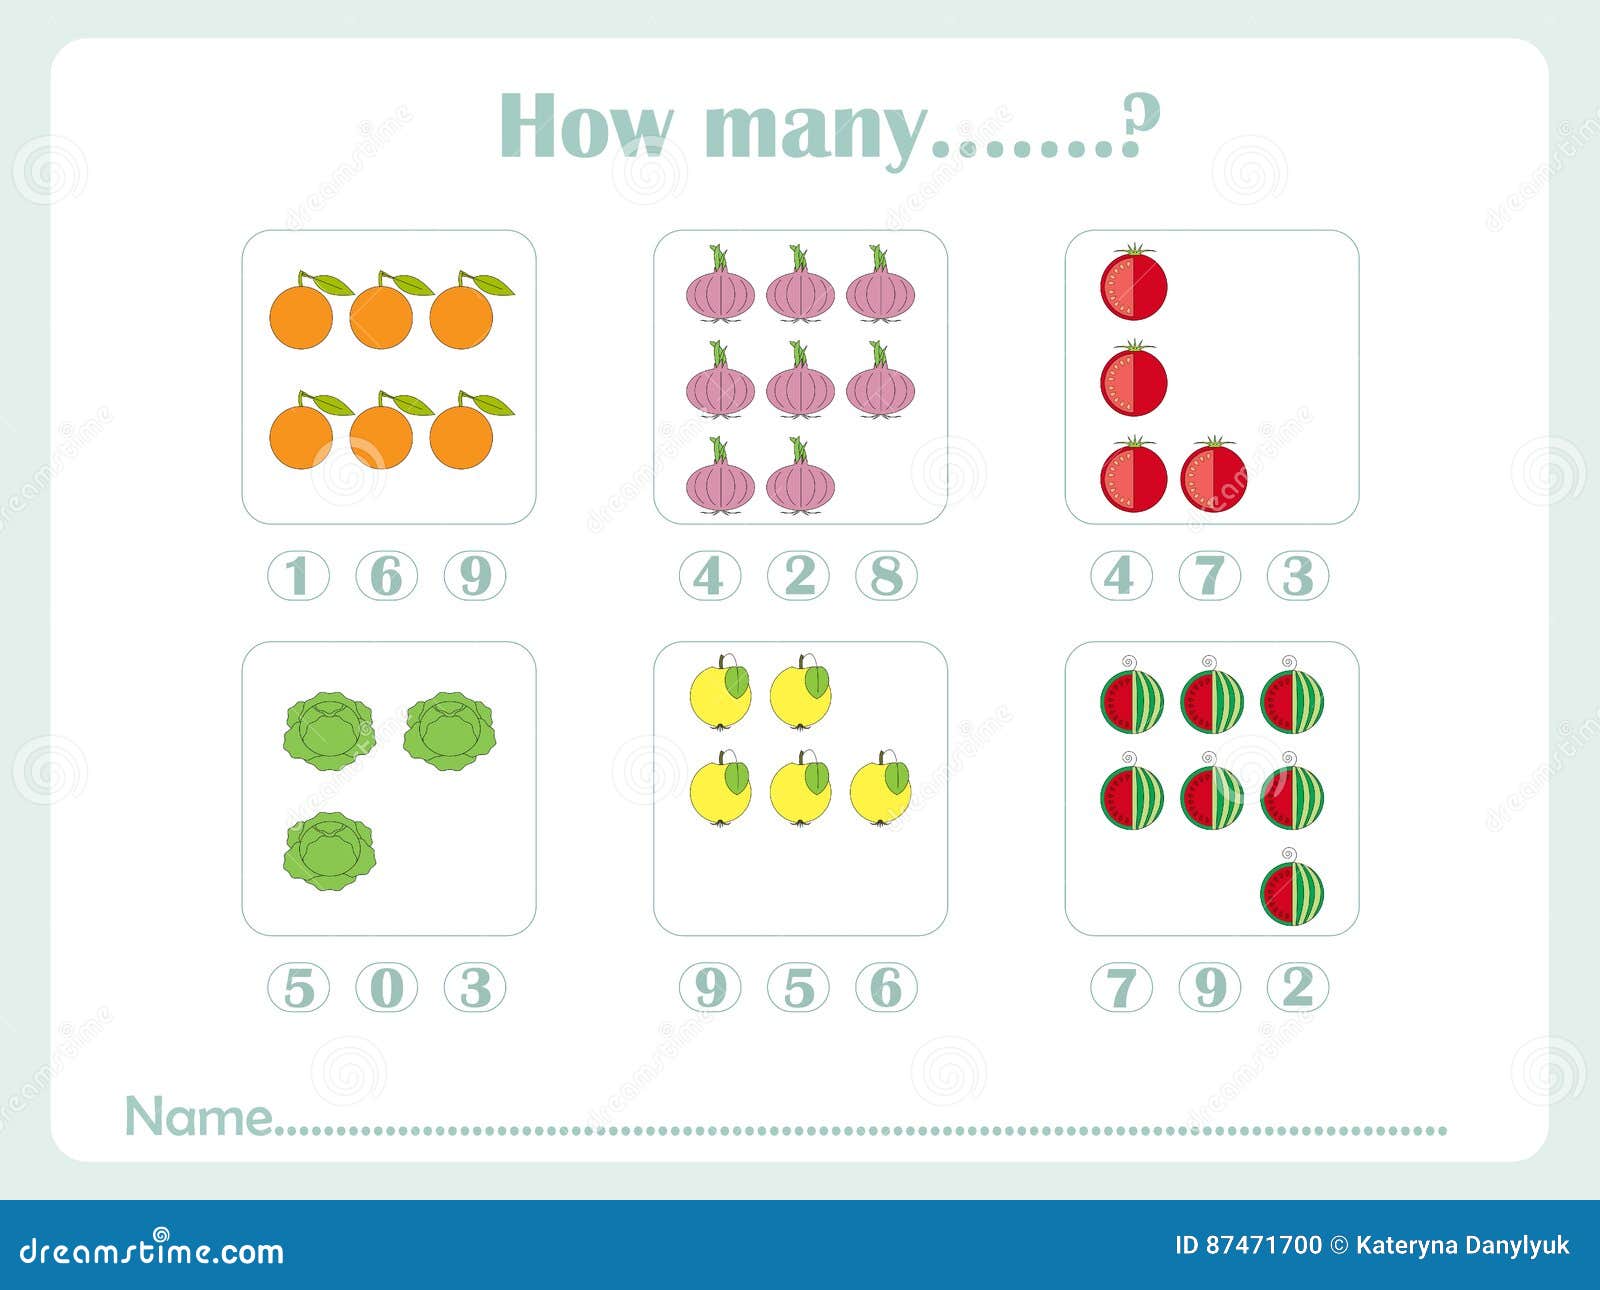 How many sets. How many игра для детей. Сосчитай и запиши количество предметов в таблицу. How many children like Maths.